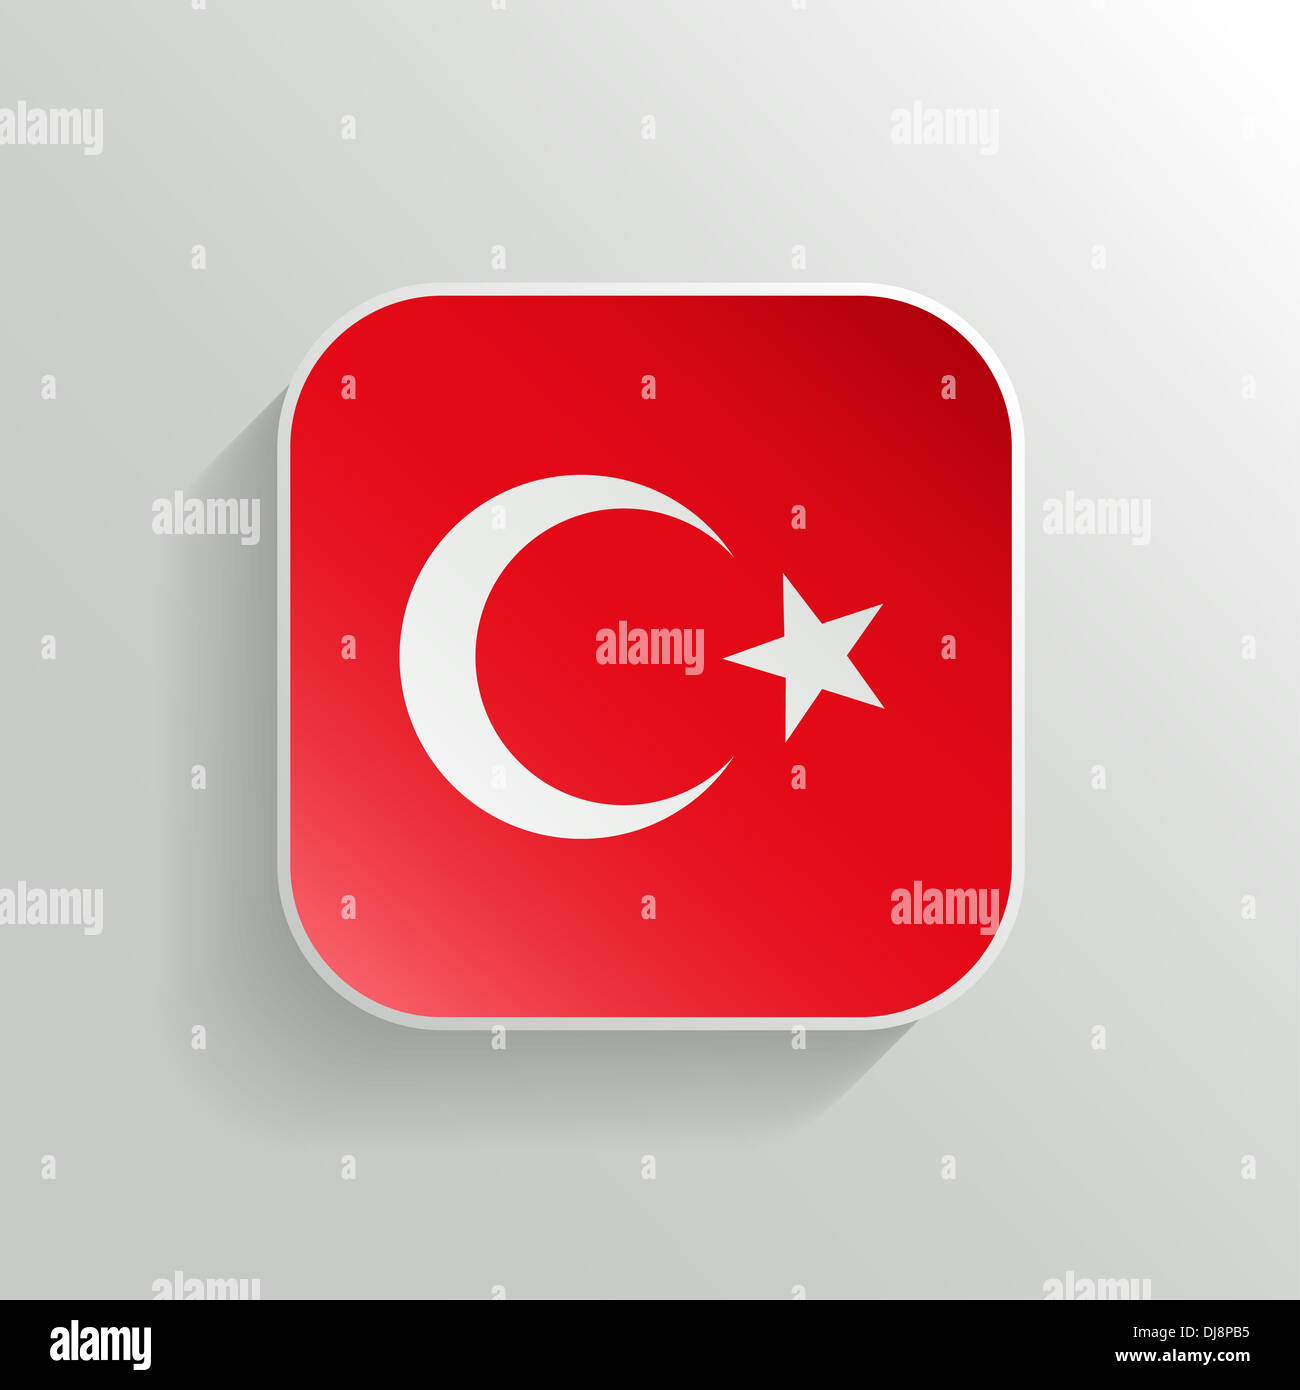 Button - Turkey Flag Icon on White Background Stock Photo